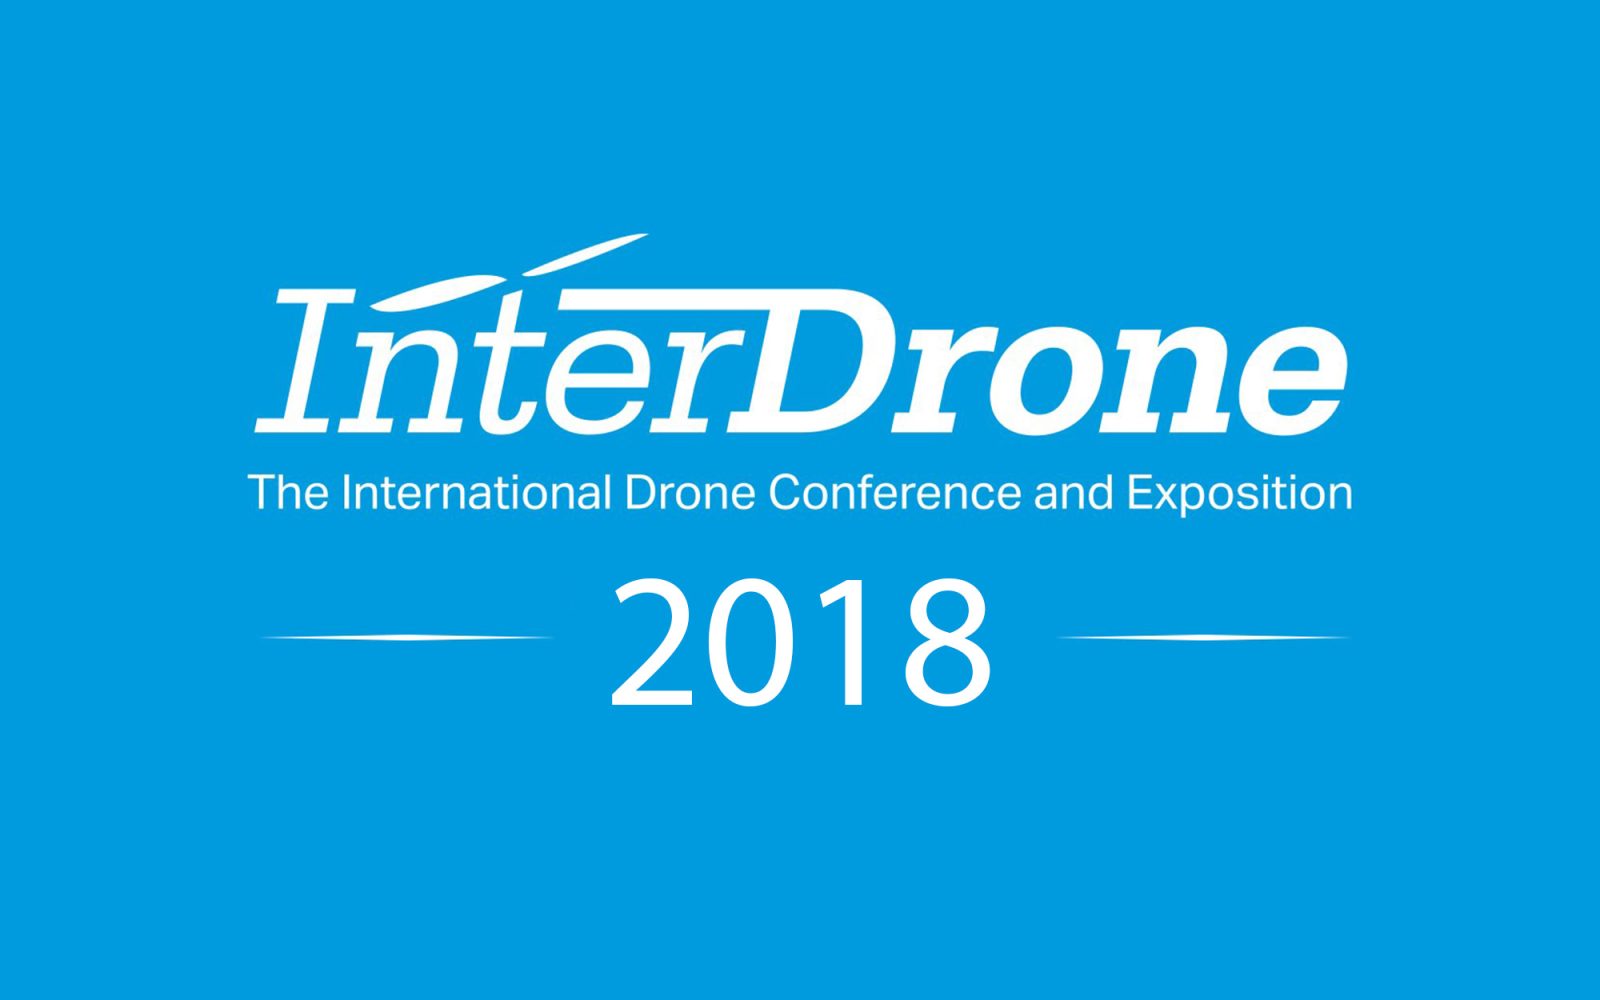 DJI Enterprise to exhibit at InterDrone 2018